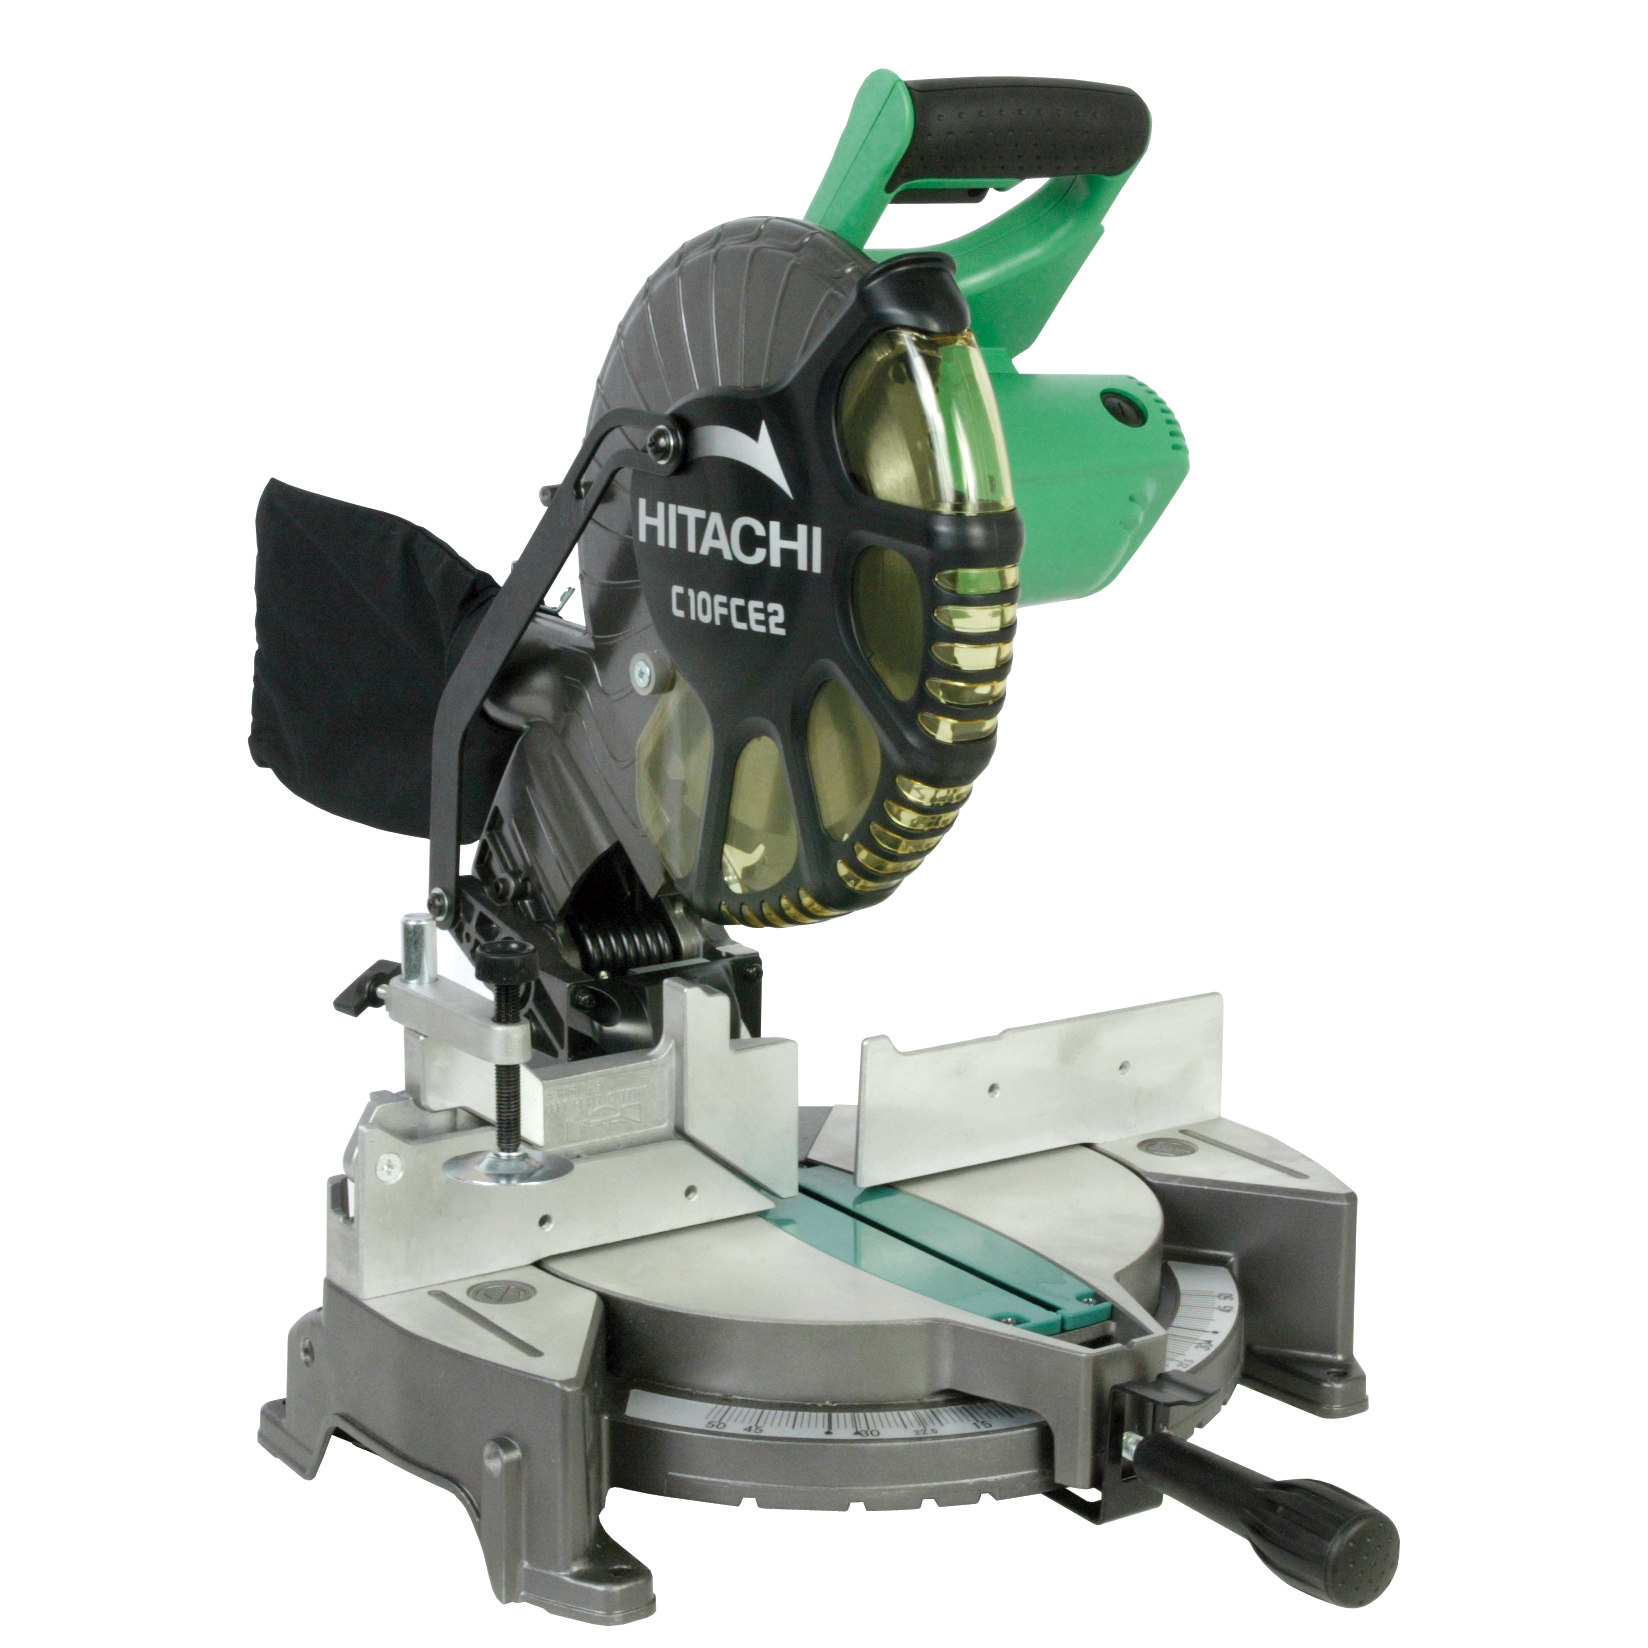 Hitachi C10FCE2 Compound Corded Miter Saw, 120 VAC, 15 A, 10 in Dia, 5000 rpm - image 2 of 5